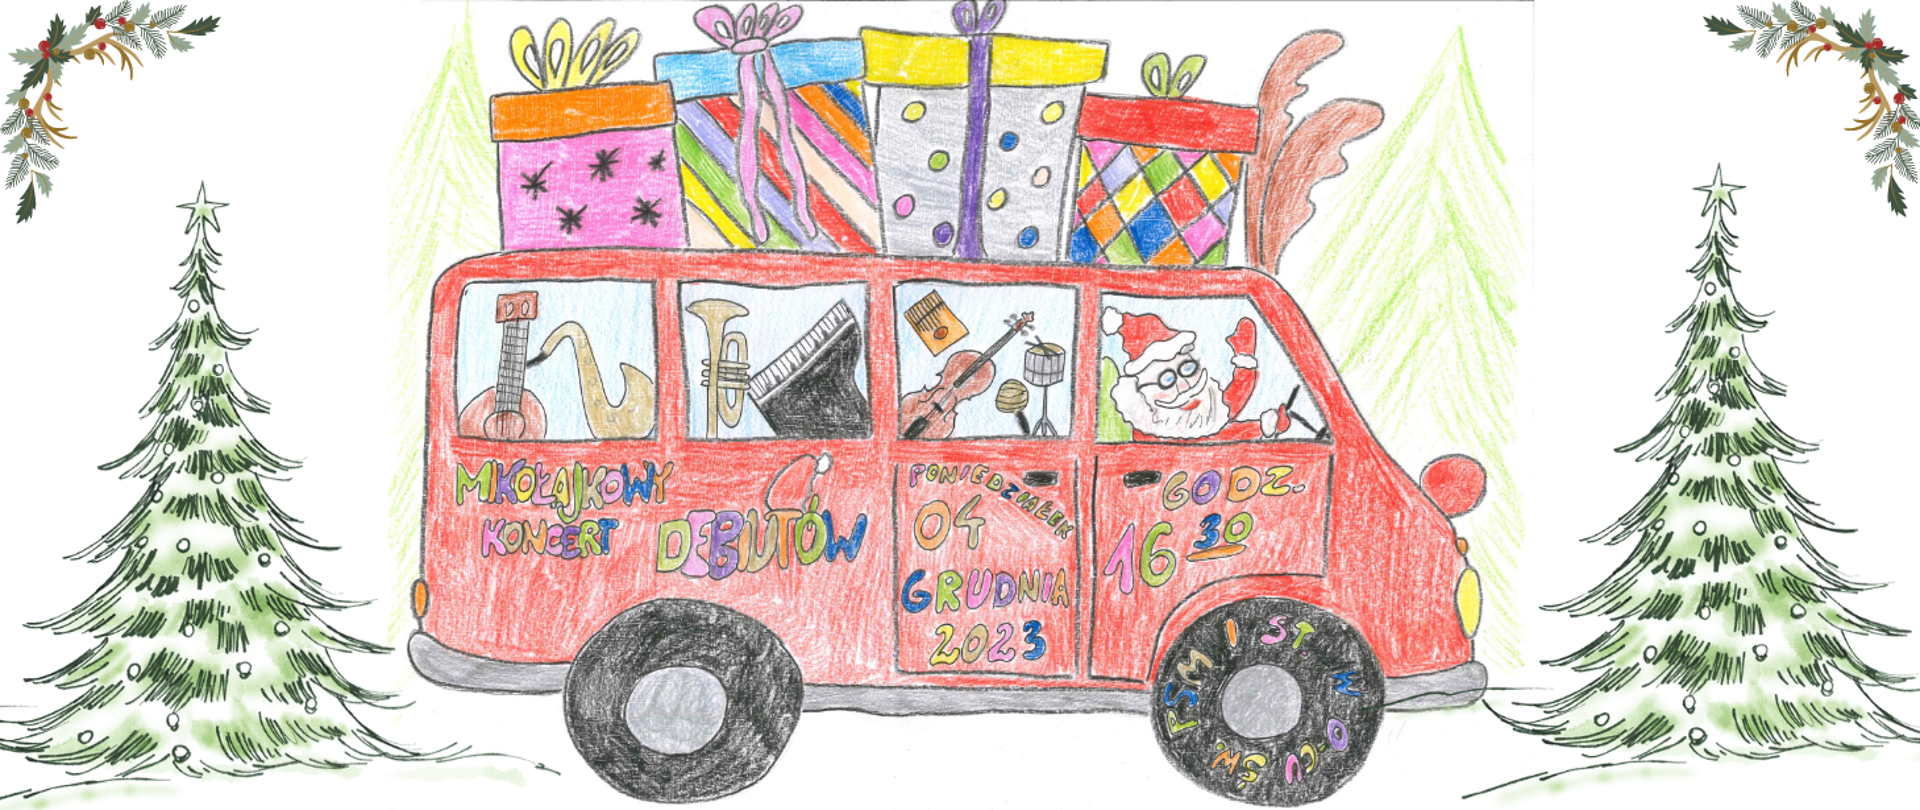 Grafika przedstawia czerwony autobus wiozący instrumenty, kierowcą jest Św. Mikołaj. Na dachu autobusu znajdują się prezenty. Tło plakatu białe, po prawej i lewej stronie zielone choinki. Kolorowe napisy informujące o wydarzeniu pn. " Mikołajkowy koncert debiutów. 